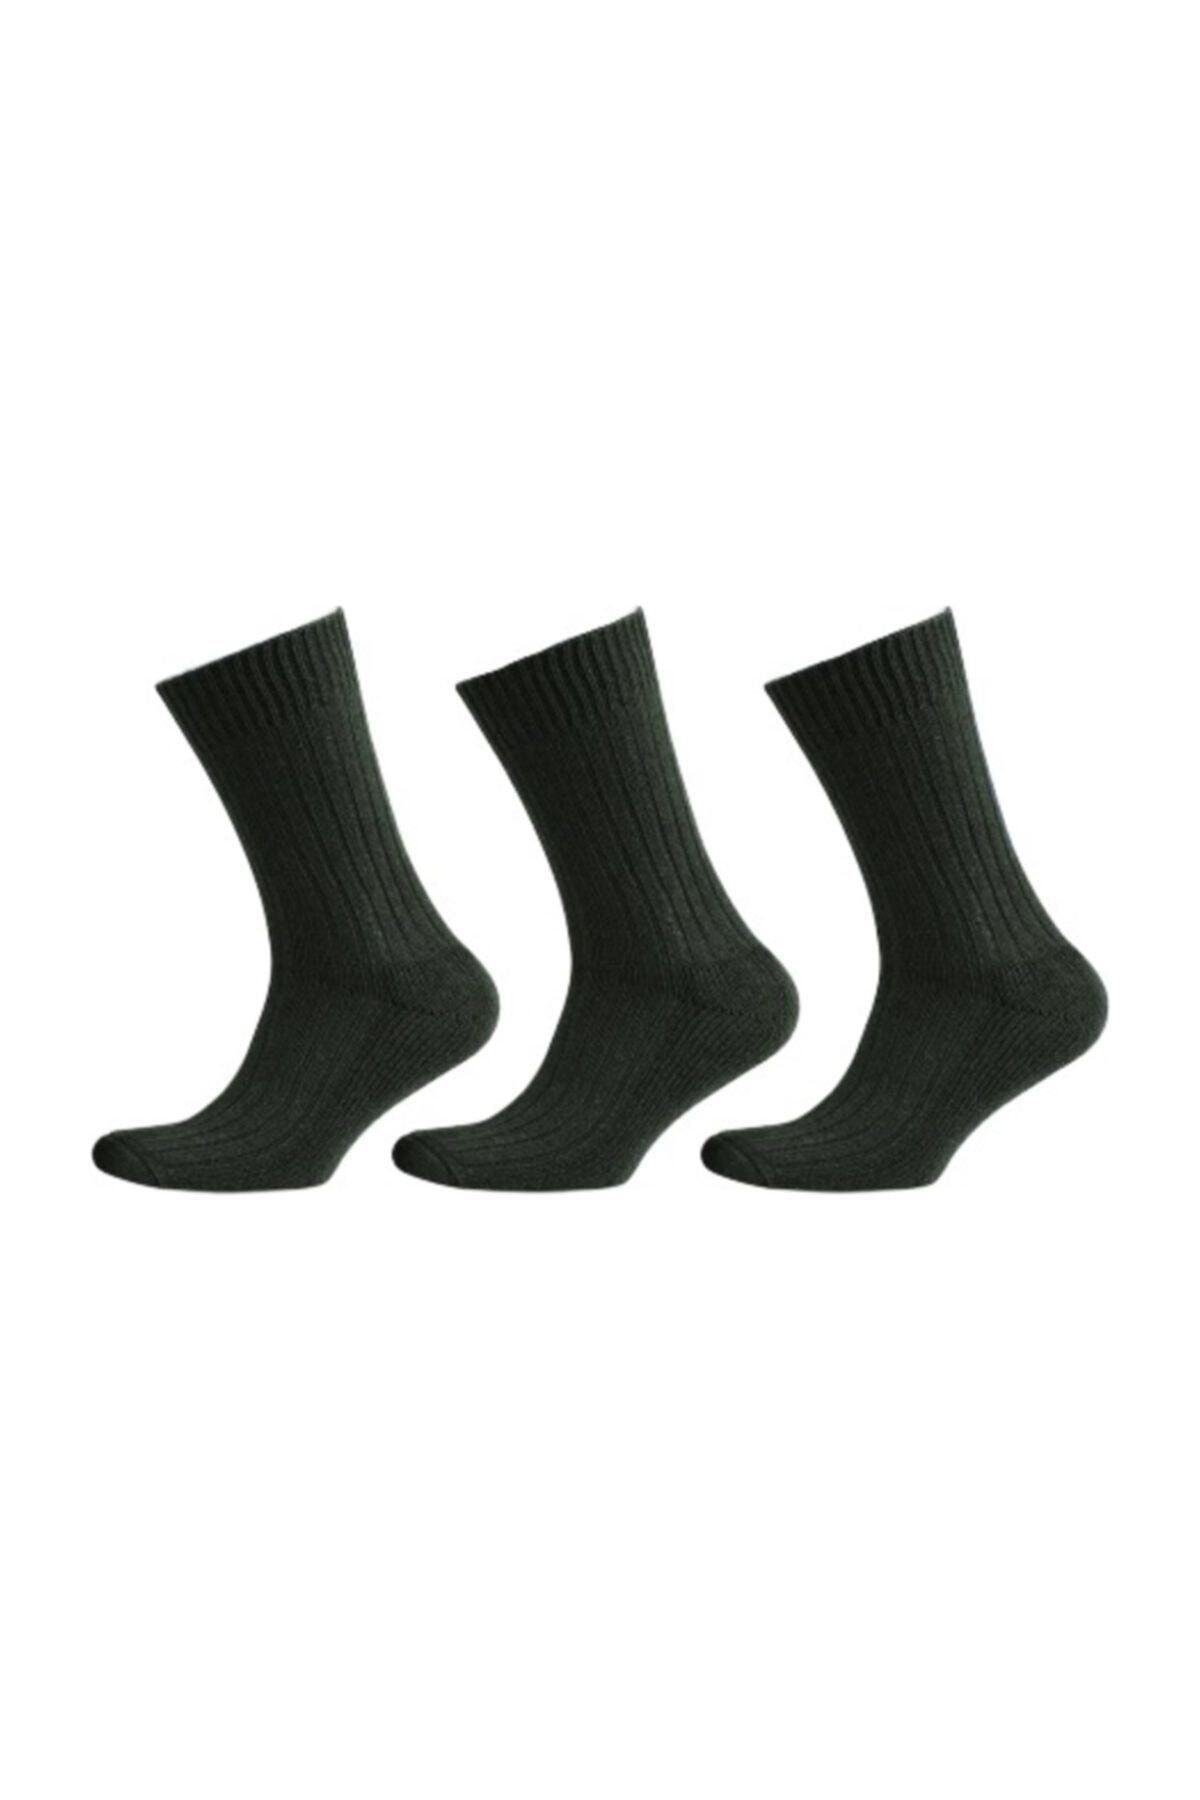 jilly jo 3'lü Tabanaltı Havlulu Kışlık Termal Bot Çorabı (6003)